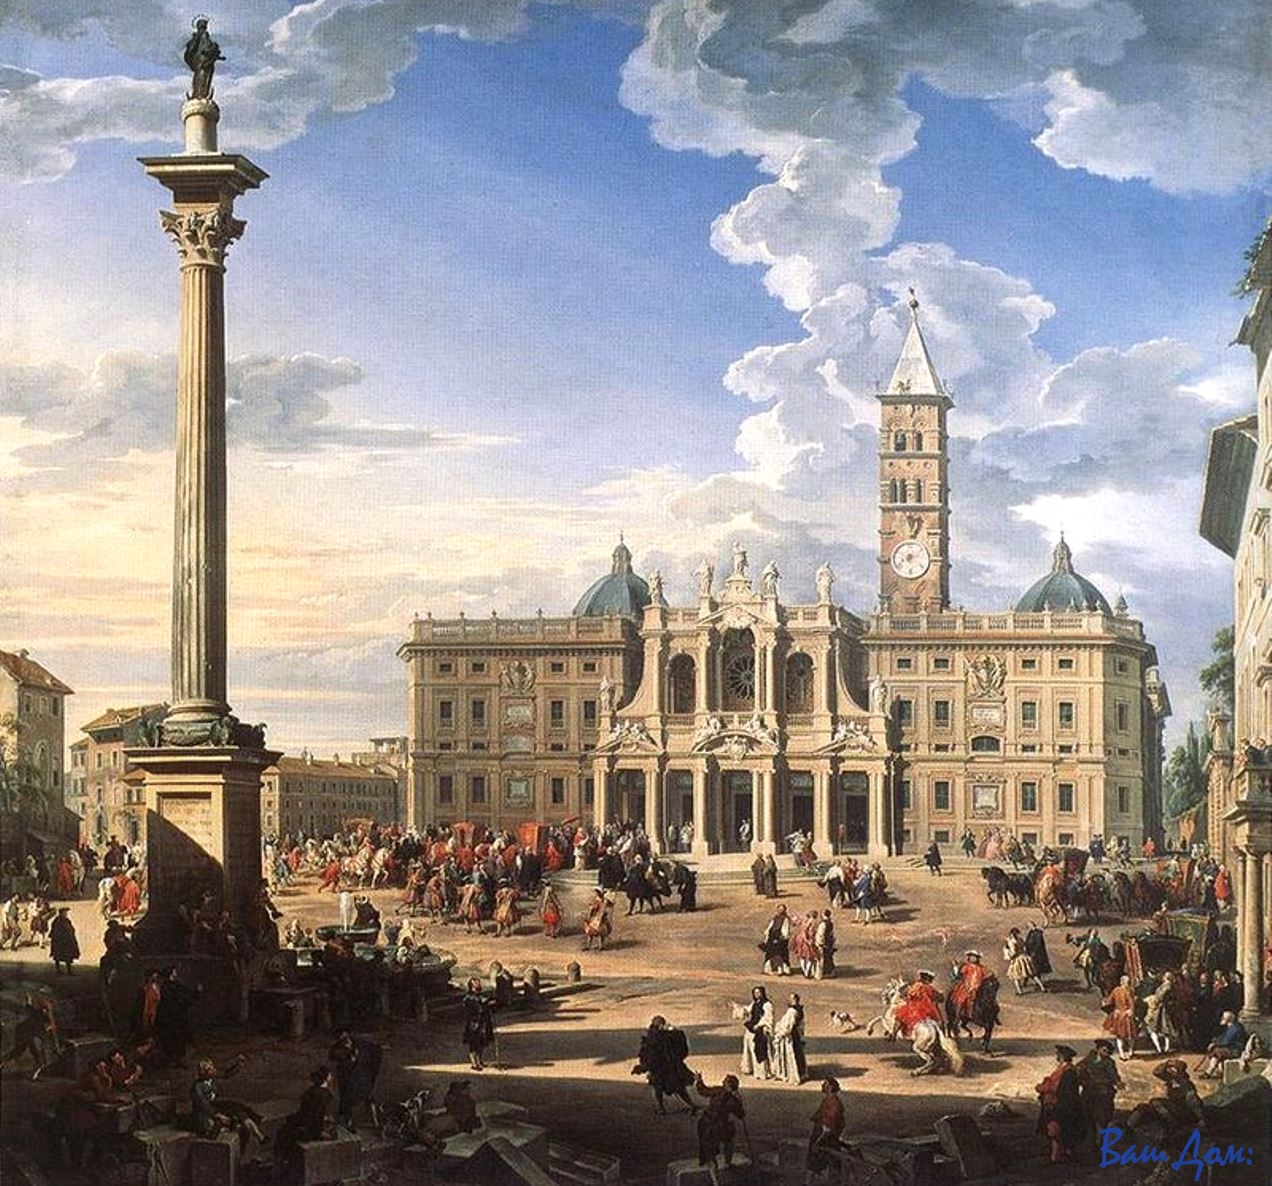 Юбилей Giovanni_Paolo_Pannini_-_The_Piazza_and_Church_of_Santa_Maria_Maggiore